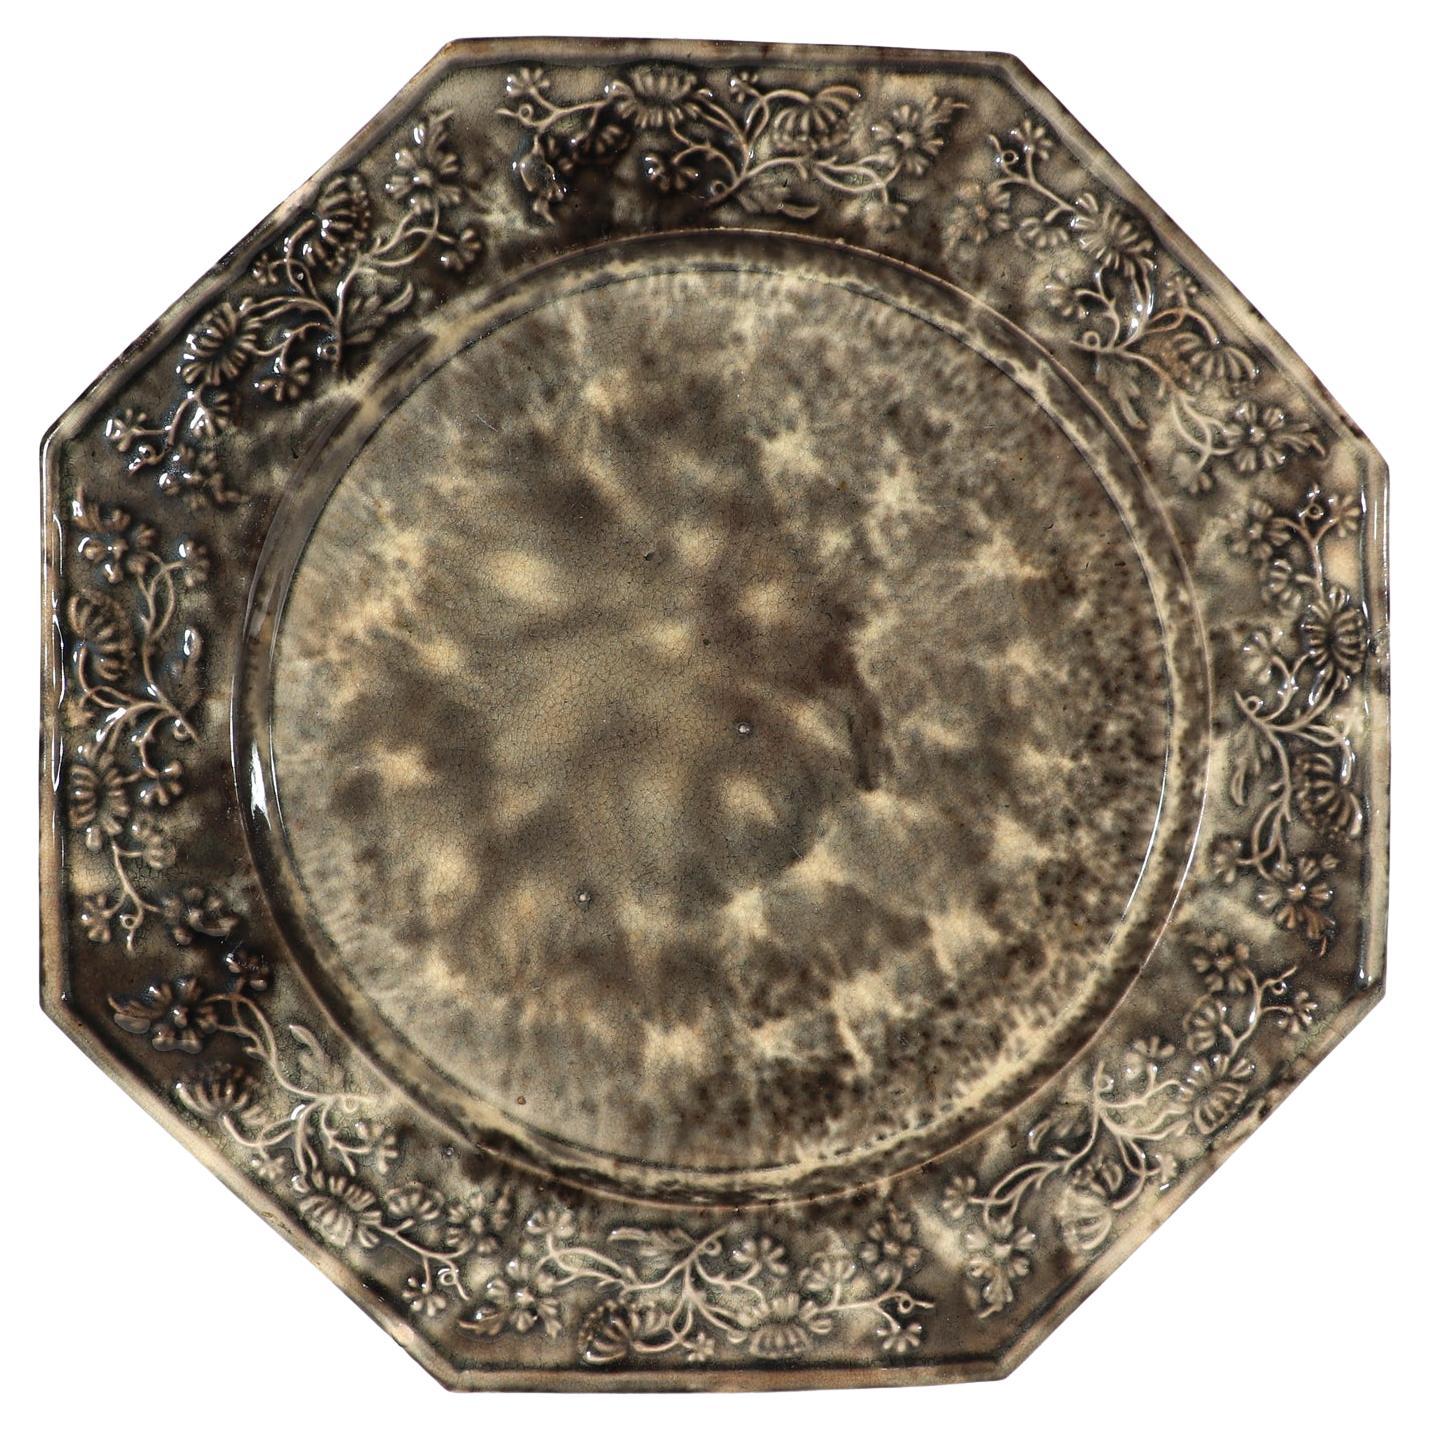 English Creamware Whieldon-type Gray Tortoiseshell Plate